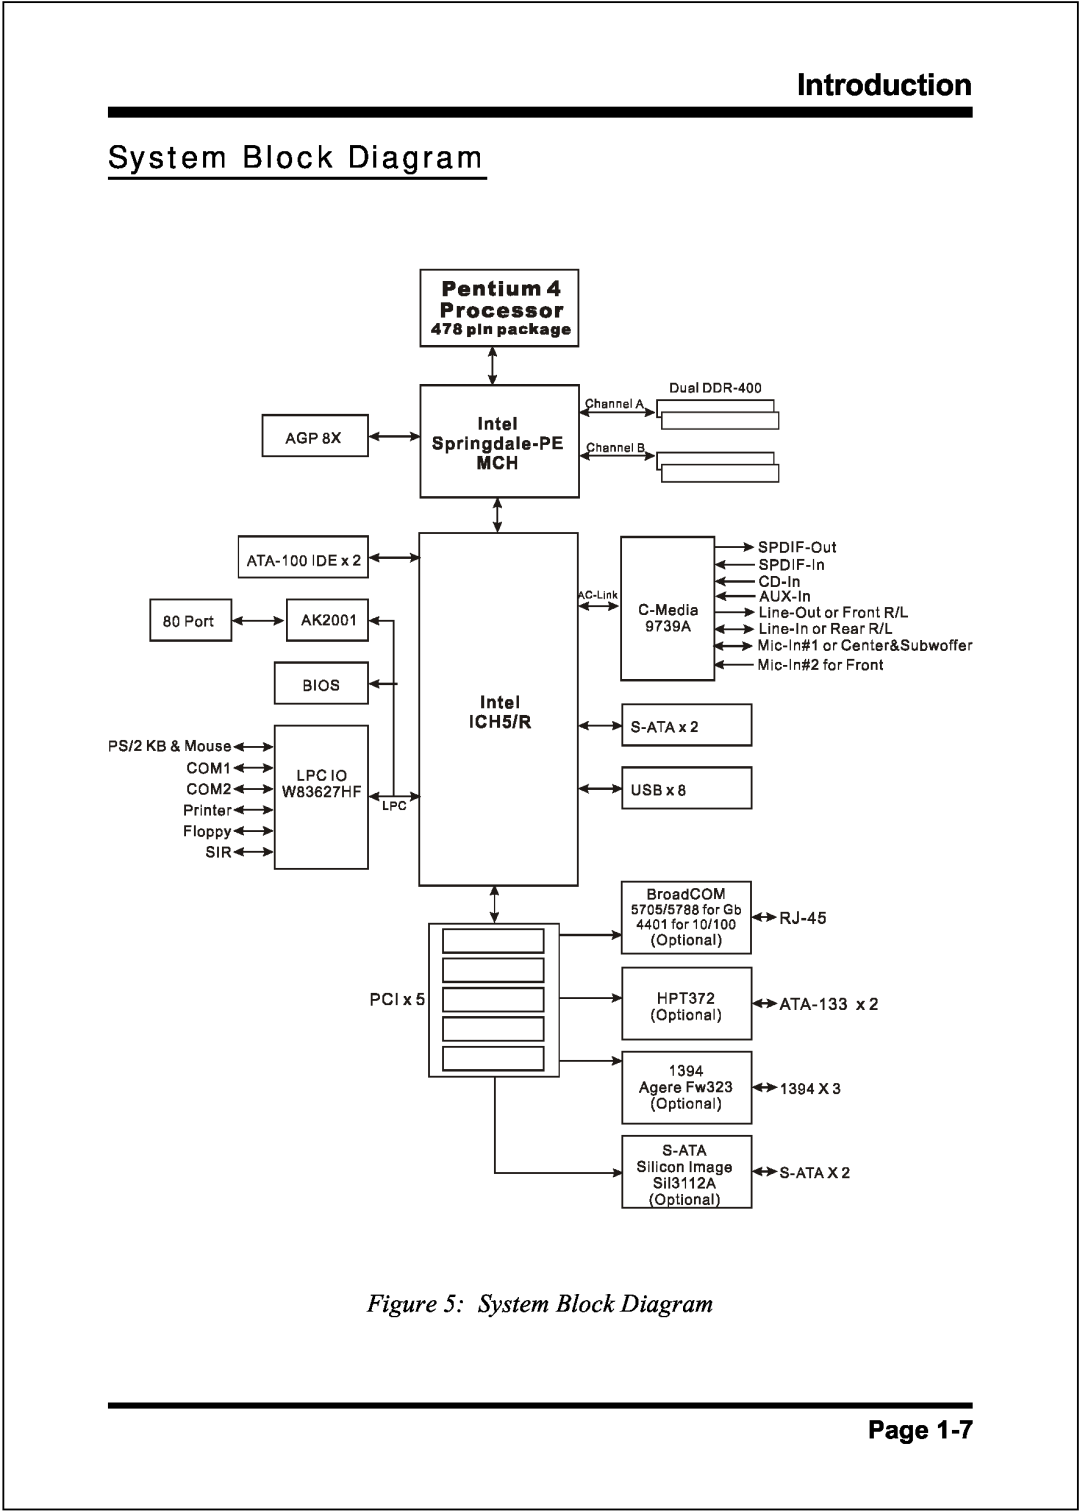 Intel FSB400 / DDR266 (PC2100), FSB800 (PC2700), FSB800 / DDR333 (PC2700), FSB533 System Block Diagram, Introduction, Page 